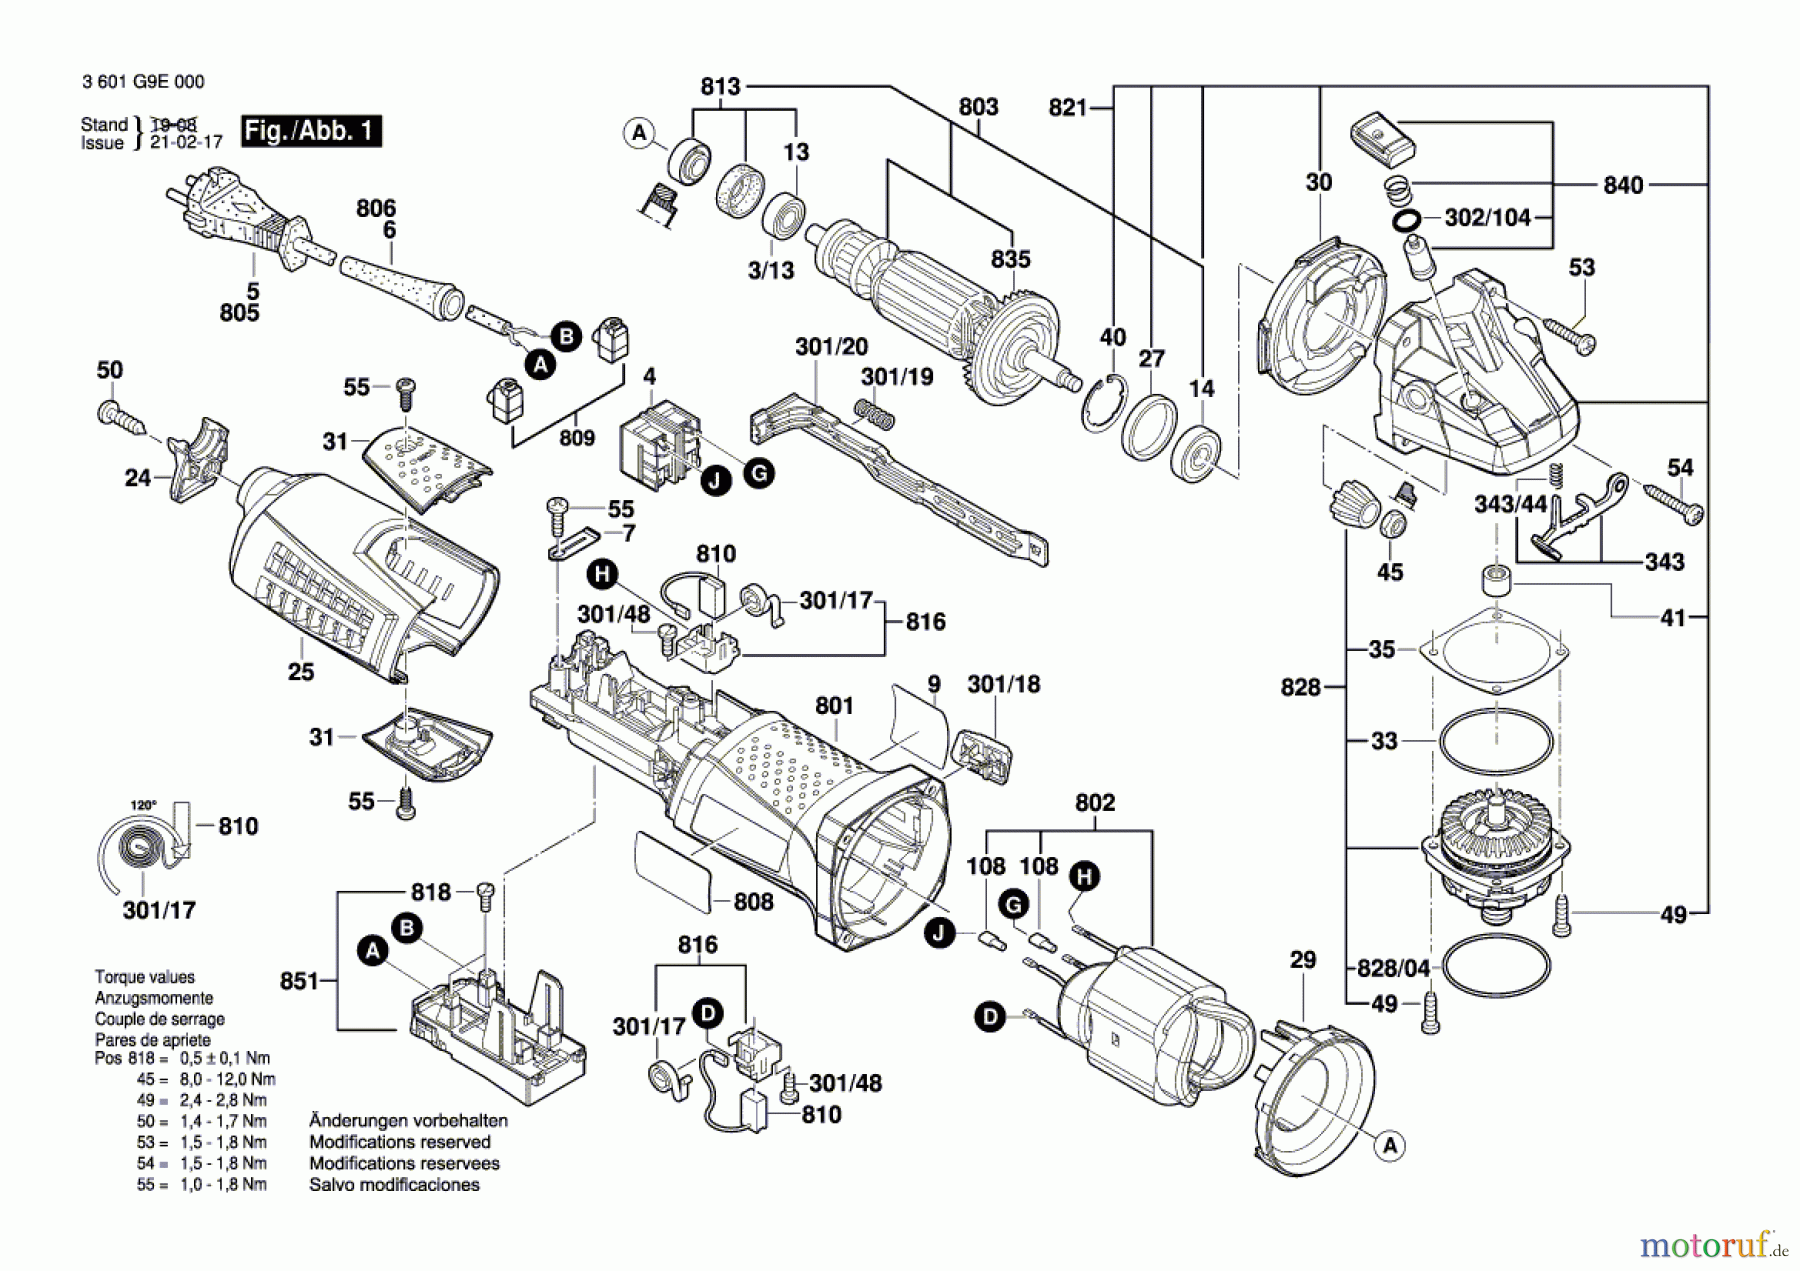  Bosch Werkzeug Winkelschleifer GWS 13-125 CI Seite 1